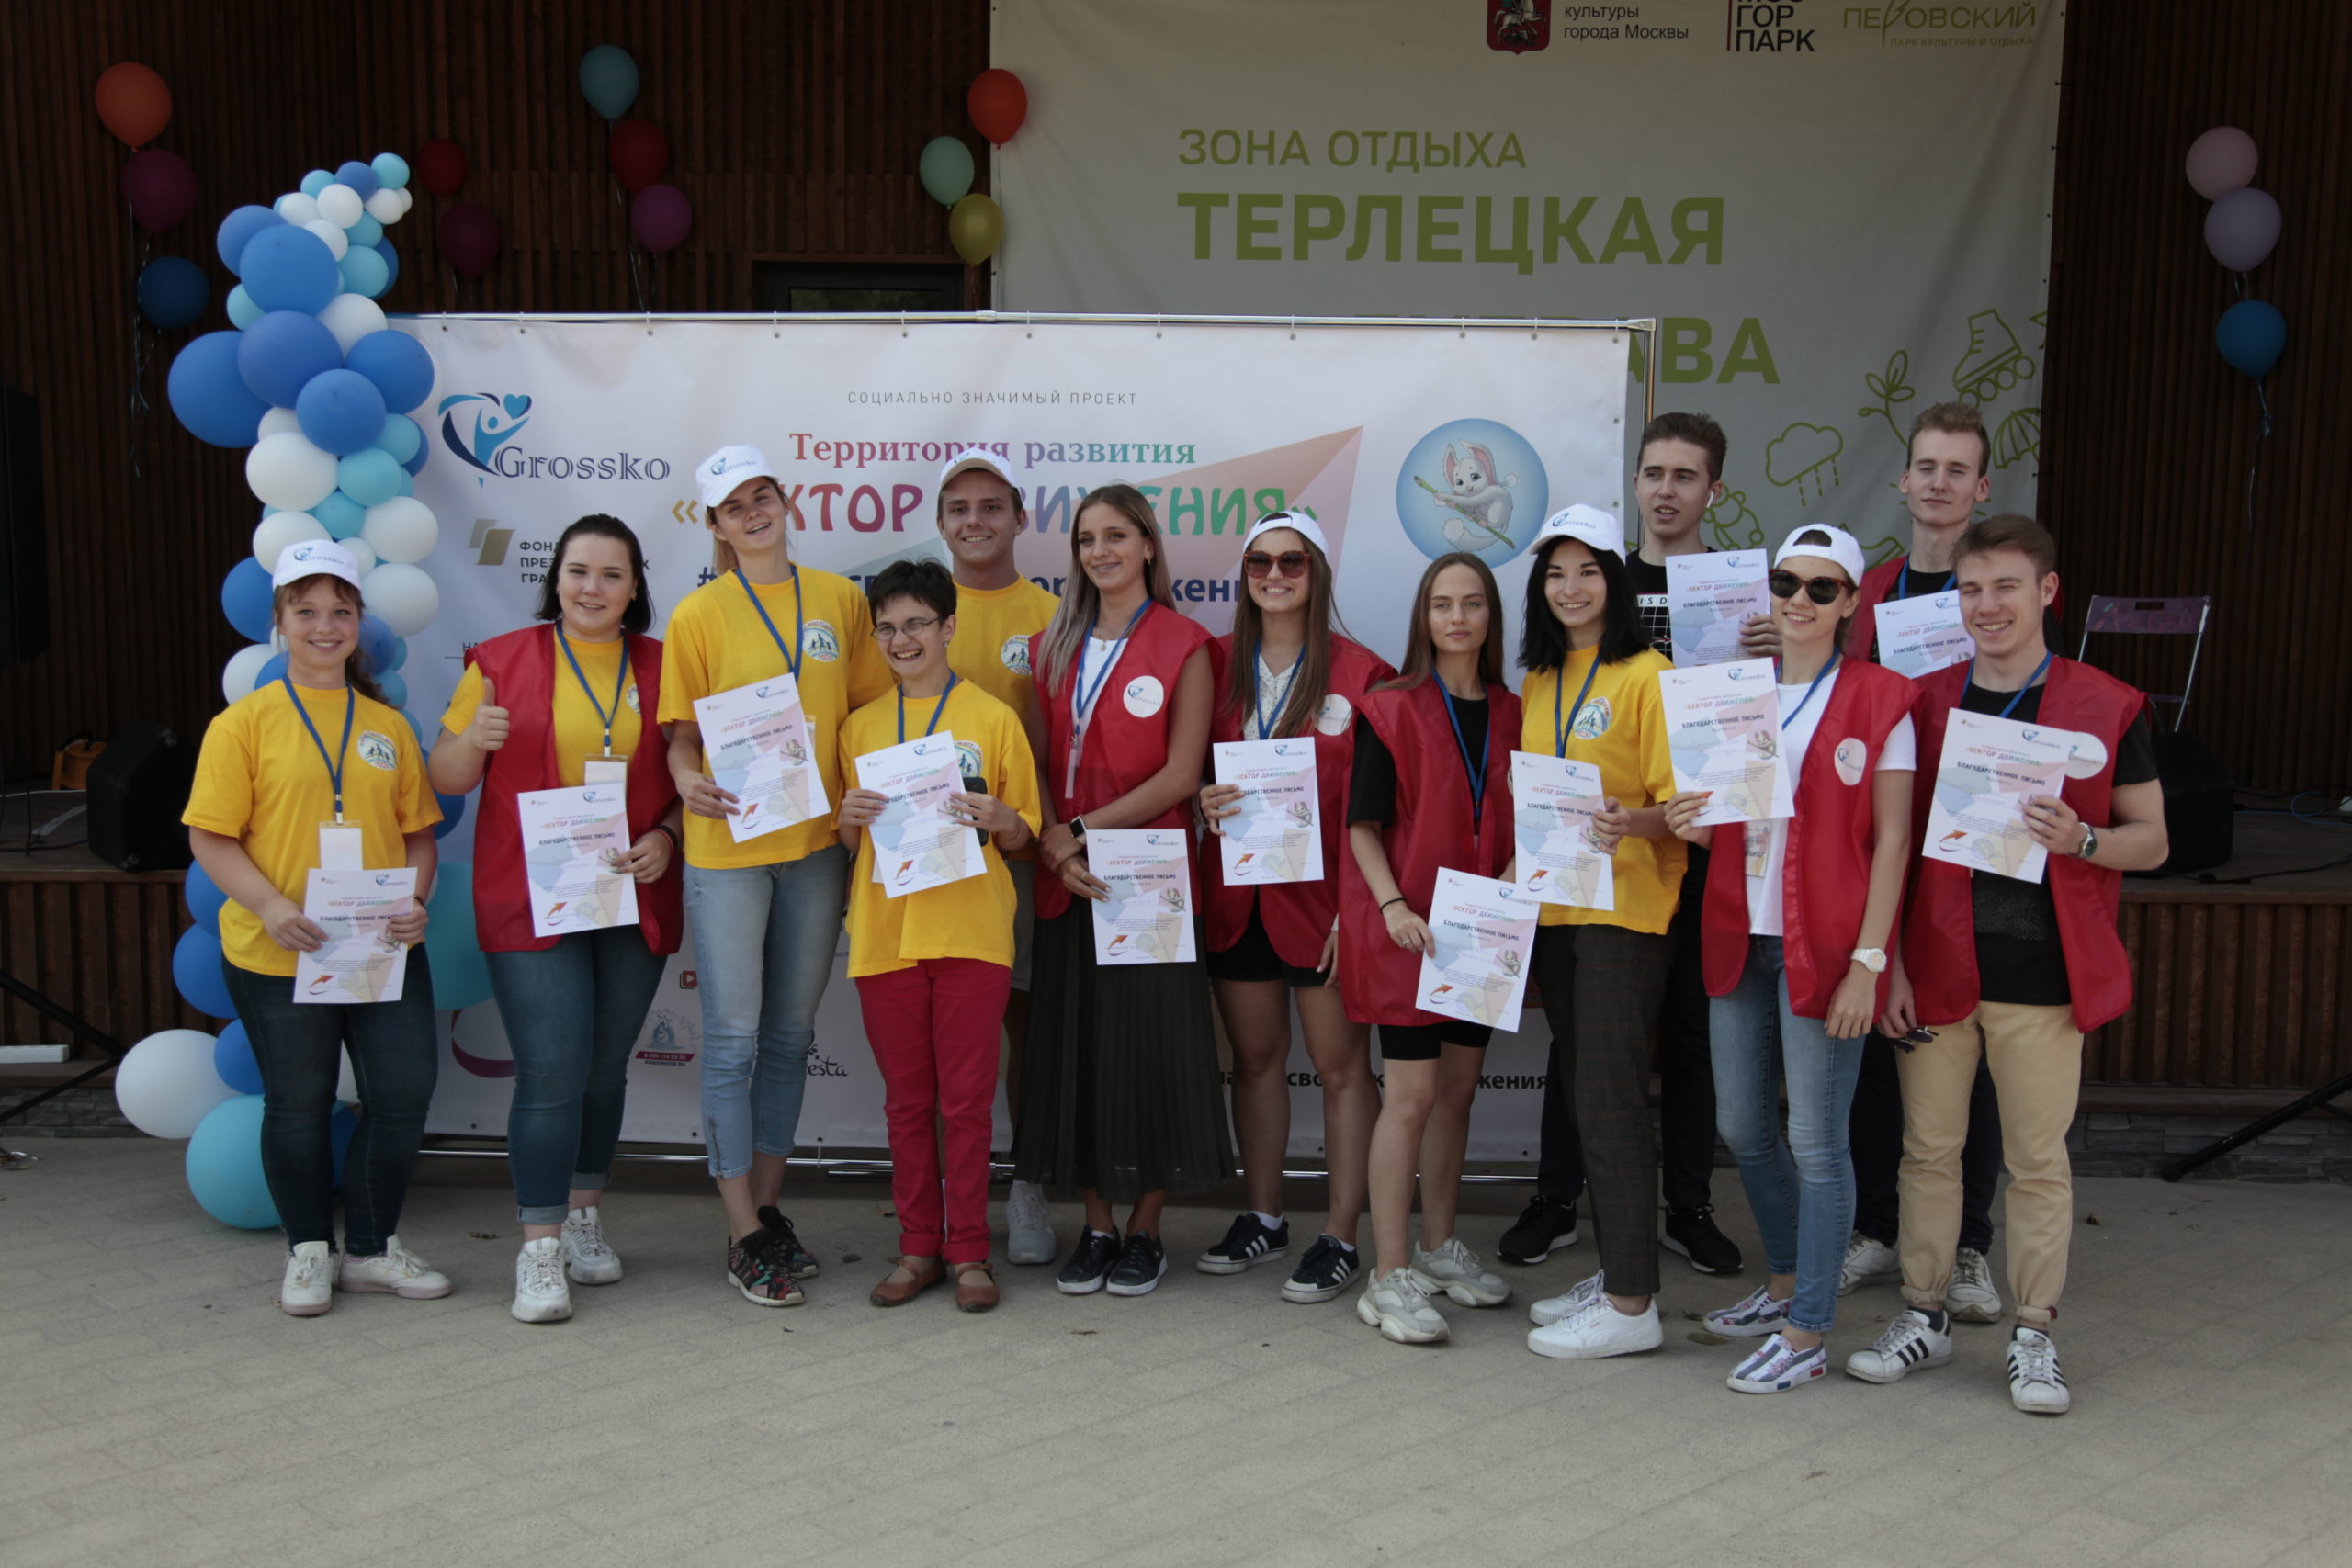 Волонтеры ИЕСТ на мероприятии «Гросско»